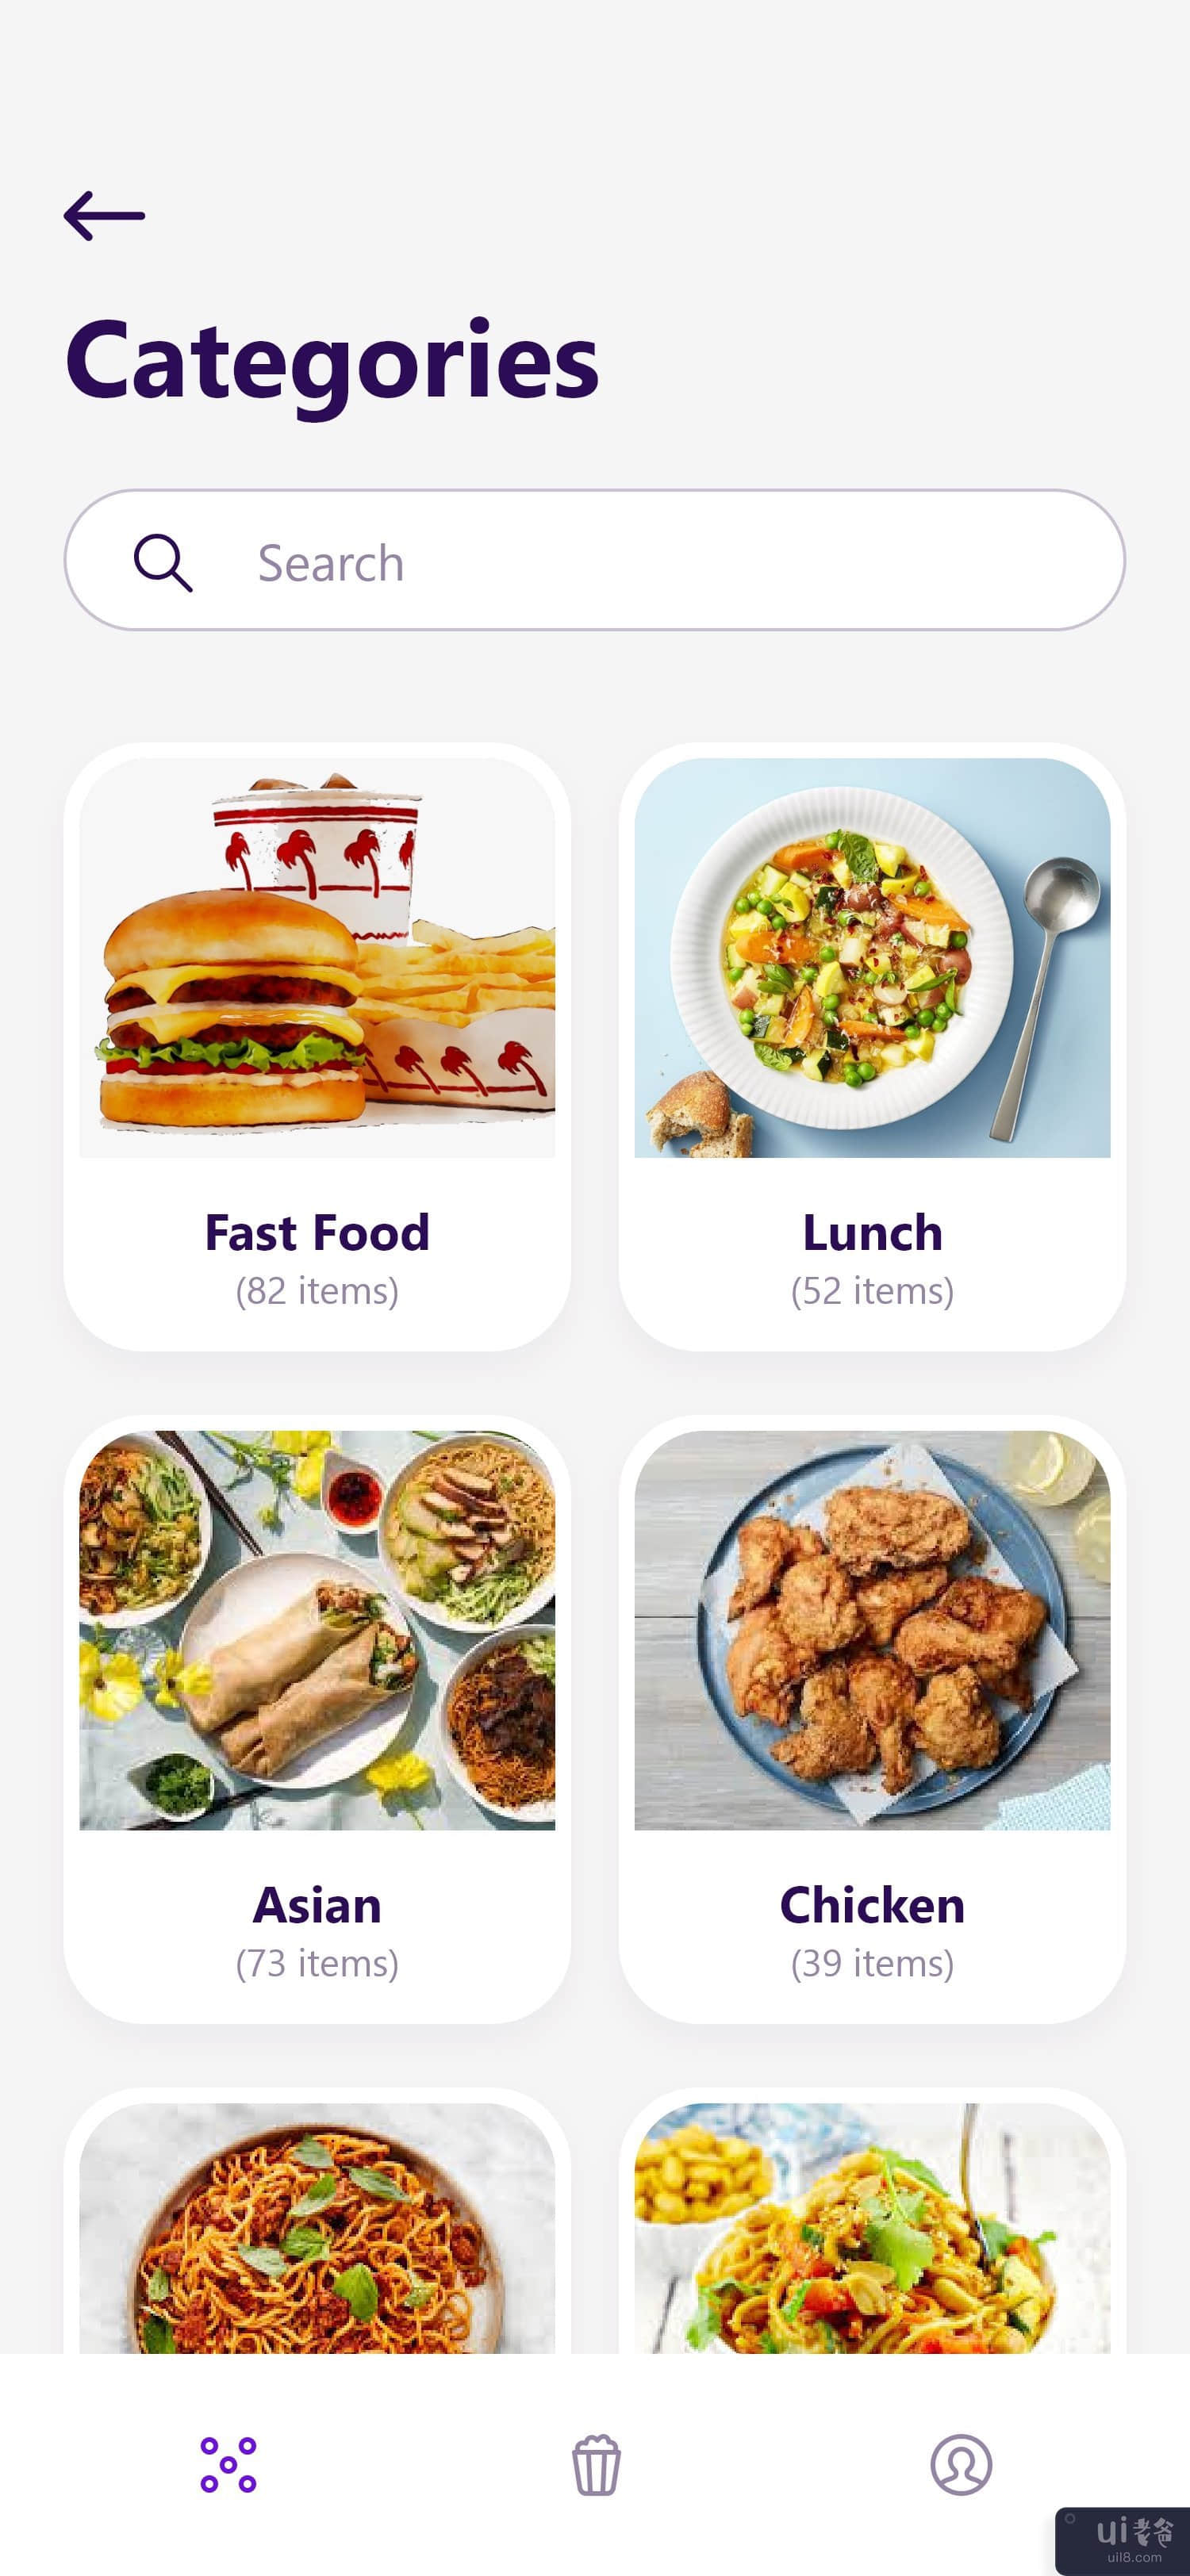 送餐应用 UI 概念 #4(Food delivery app UI concept #4)插图3